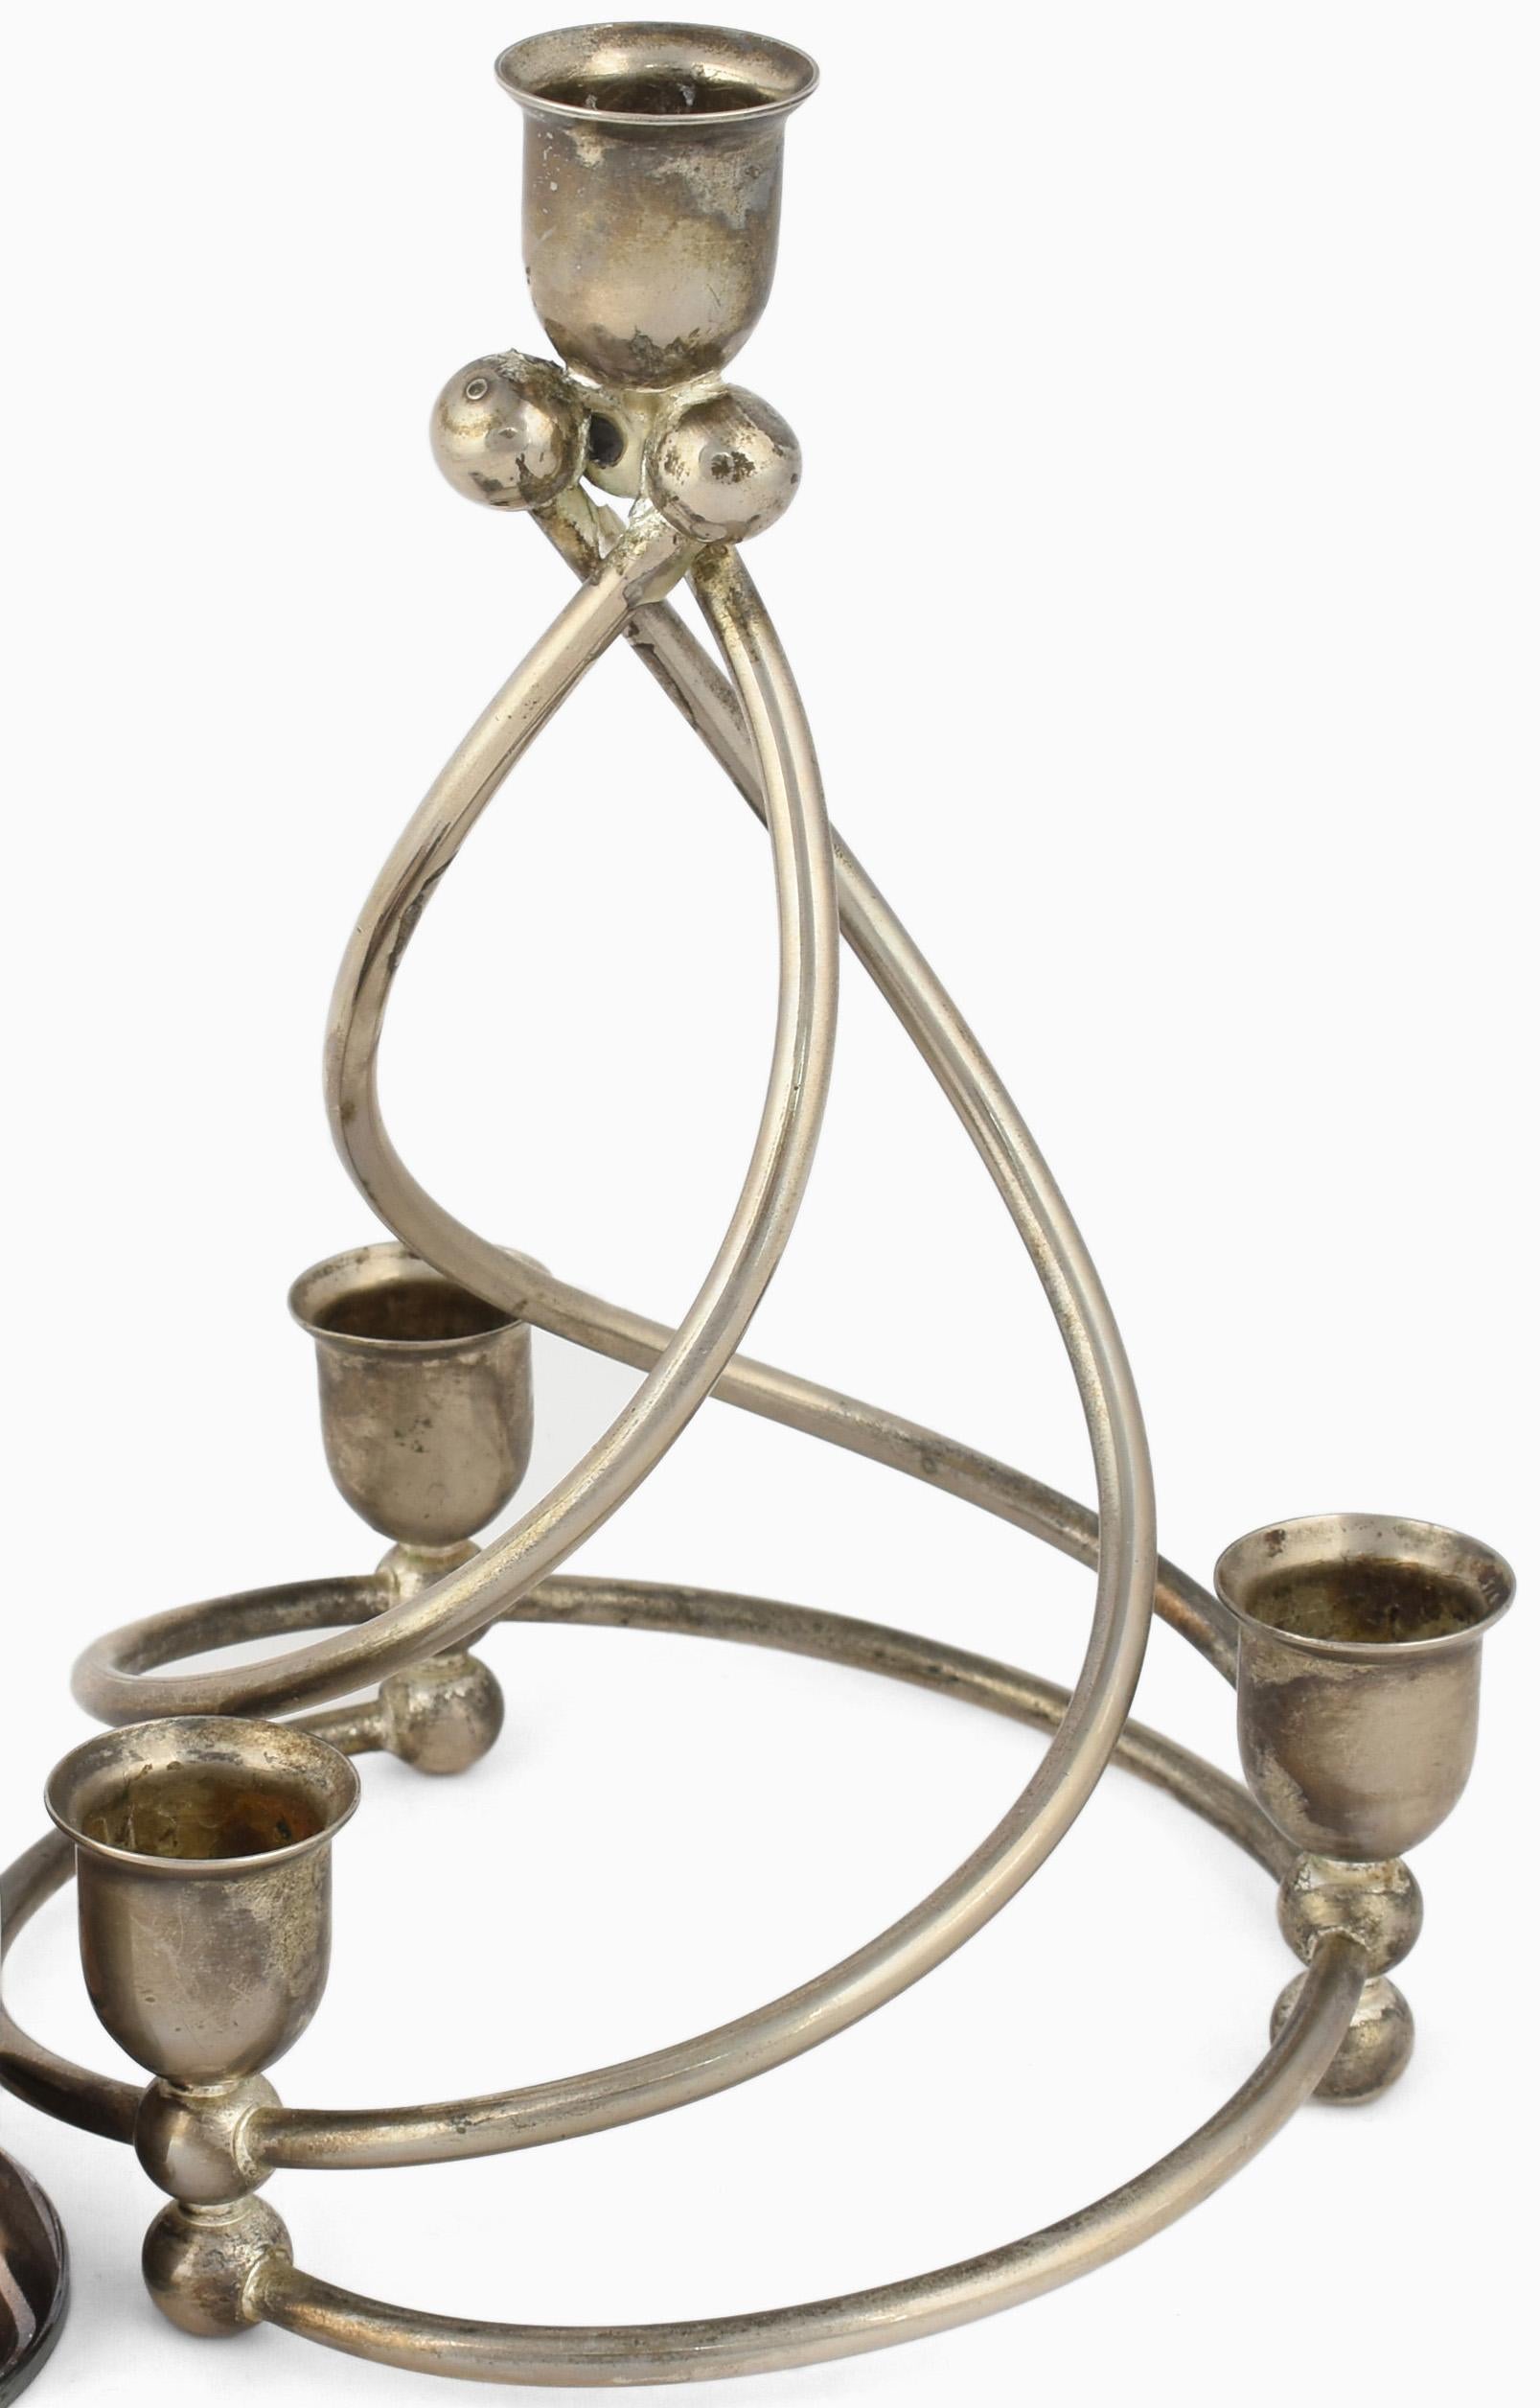 Deux chandeliers en spirale est une paire d'objets décoratifs originaux réalisés dans les années 1920. 

Métal argenté d'origine. La paire comprend : un chandelier en métal argenté (H. 8 cm) et un chandelier en métal de couleur argentée (H. 22,5